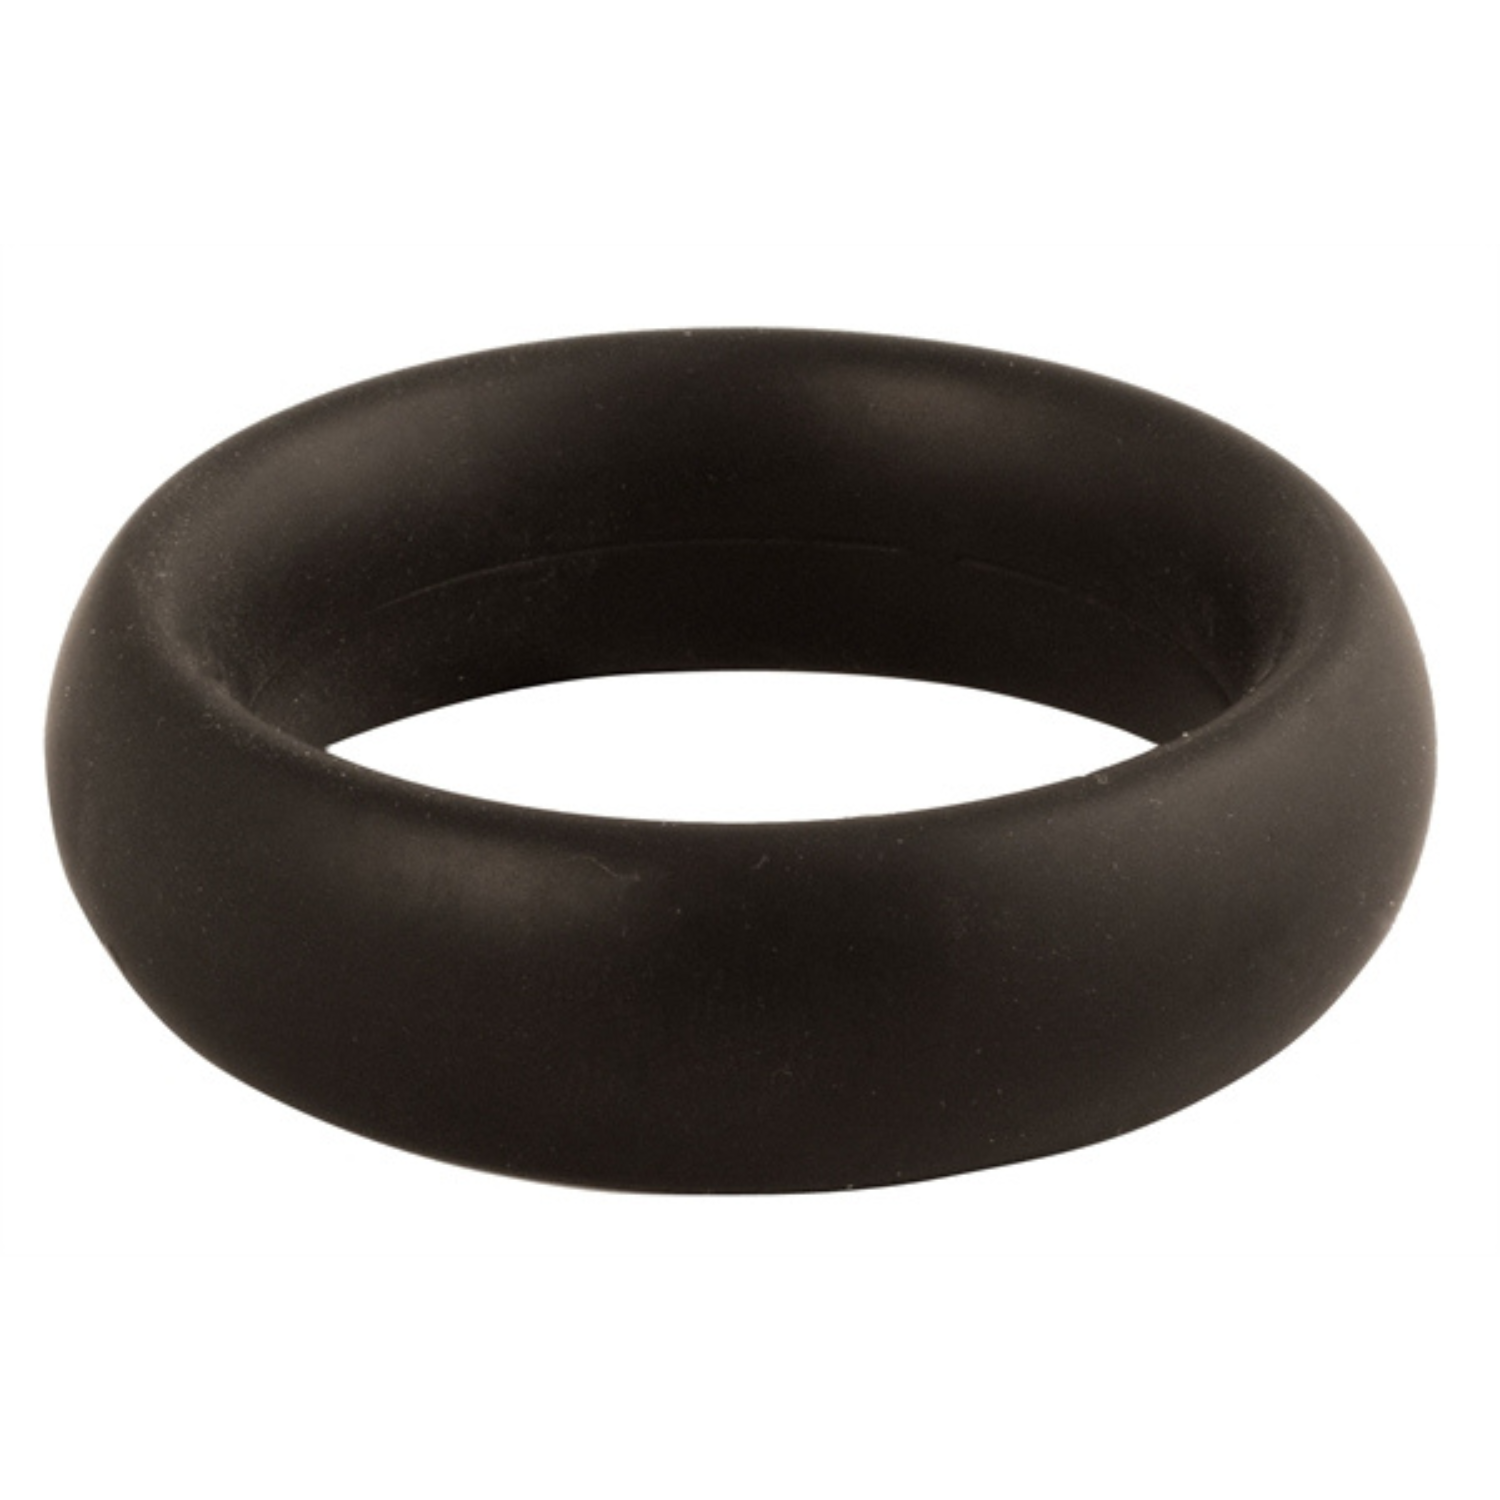 Zwarte donut cockring met een diameter van 40 mm. Ontworpen door Mister B voor gay mannen en te koop bij Flavourez.